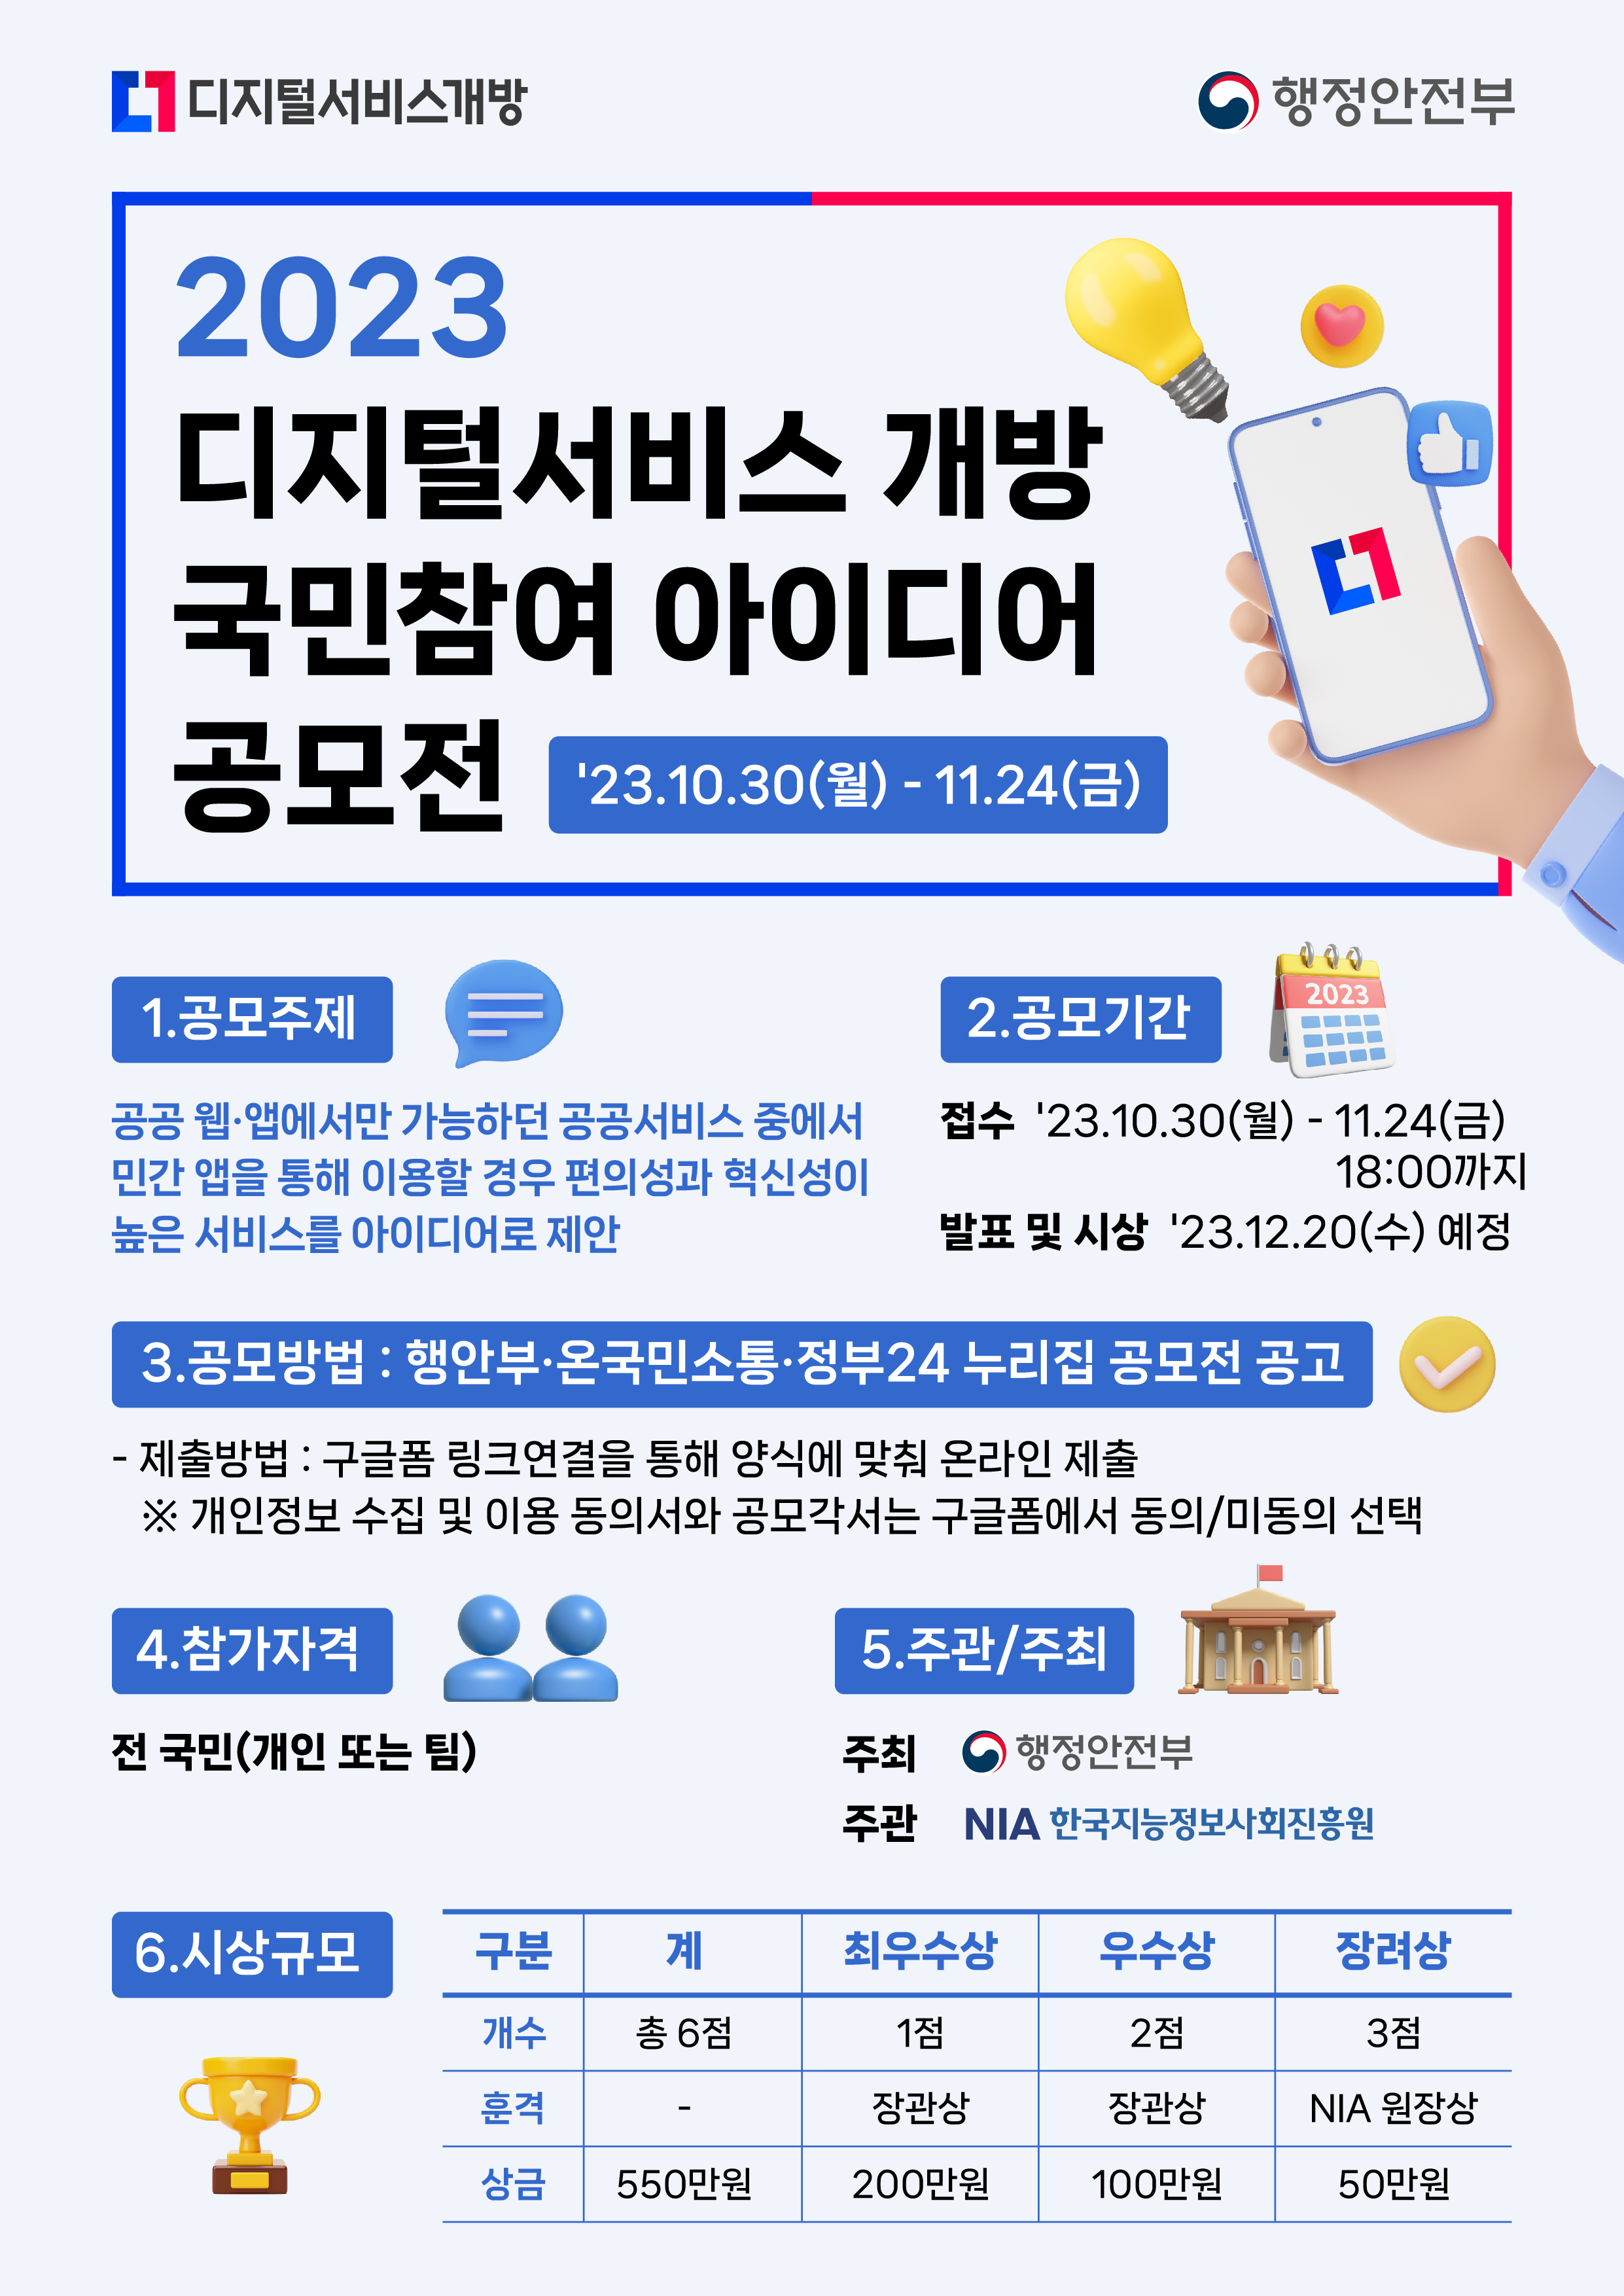 [공모전] 2023 디지털서비스 개방 국민참여 아이디어 공모전 개최 썸네일